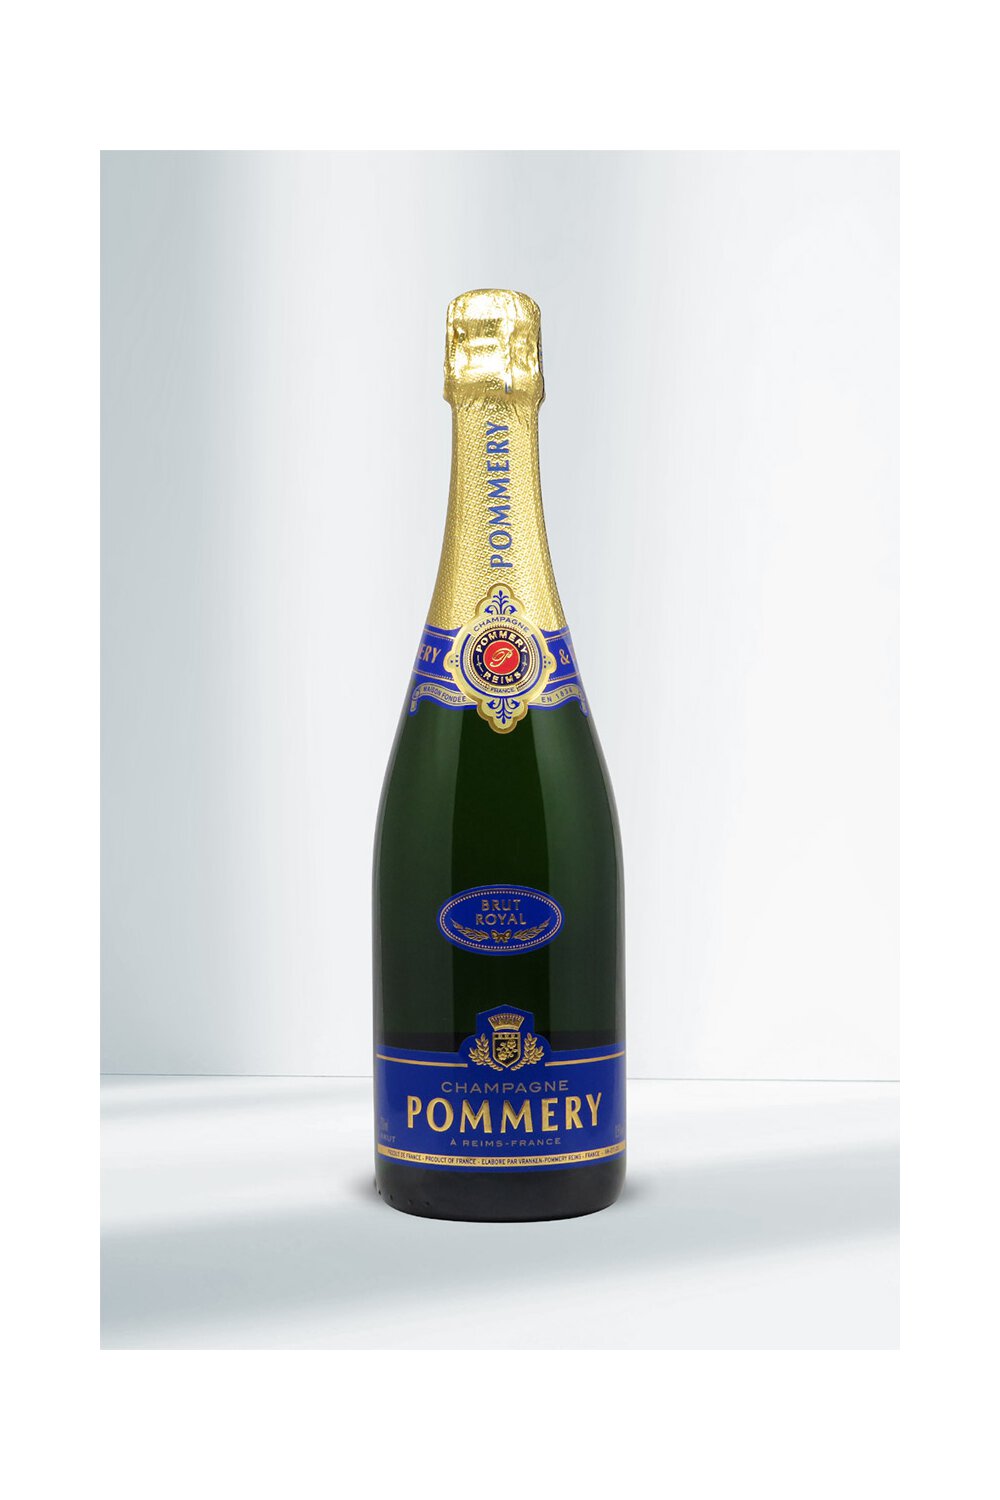 Pommery Brut Royal Champagner 12,5% I Beverage-Shop | Champagner & Sekt